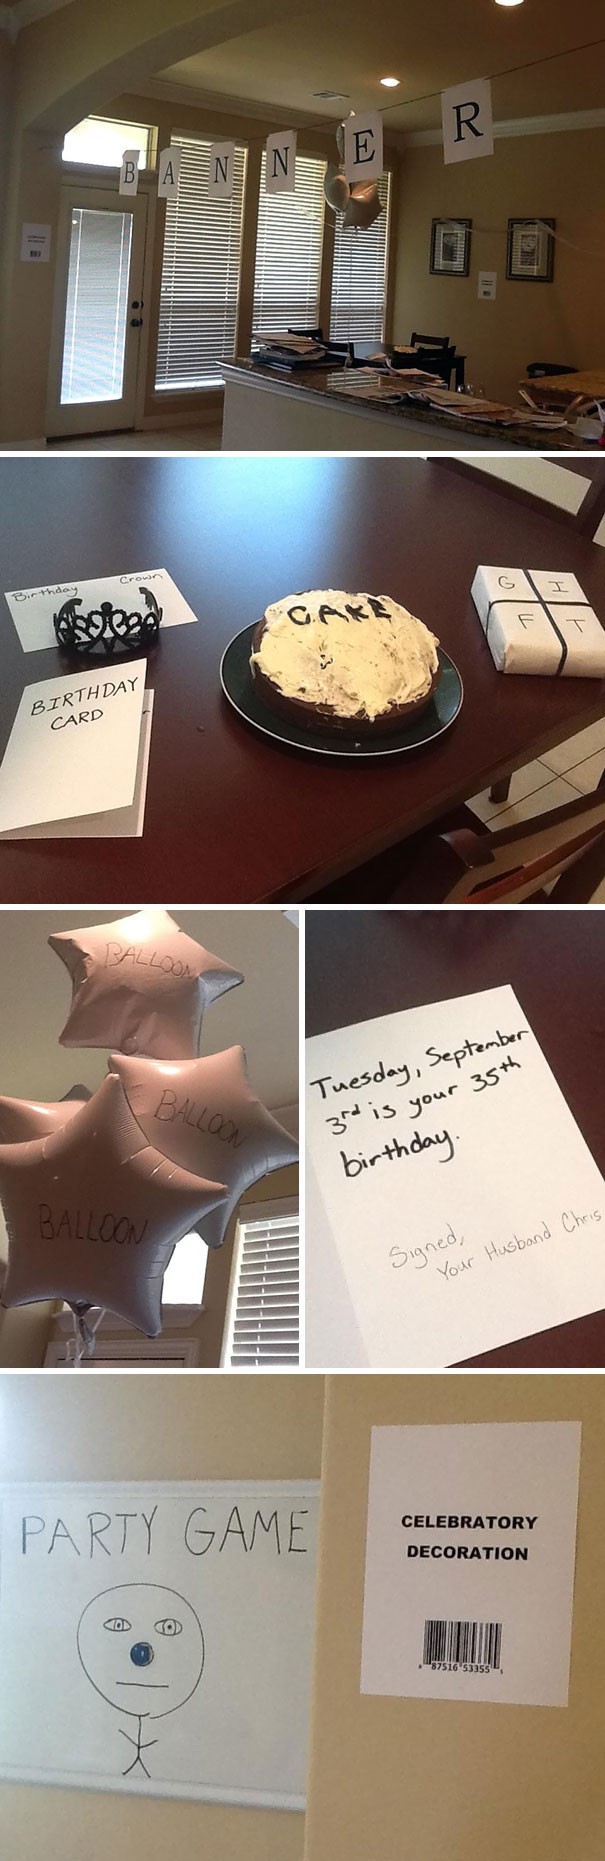 Mi mujer ha dicho de querer una simple fiesta de cumpleaños: he hecho lo mejor de mi!